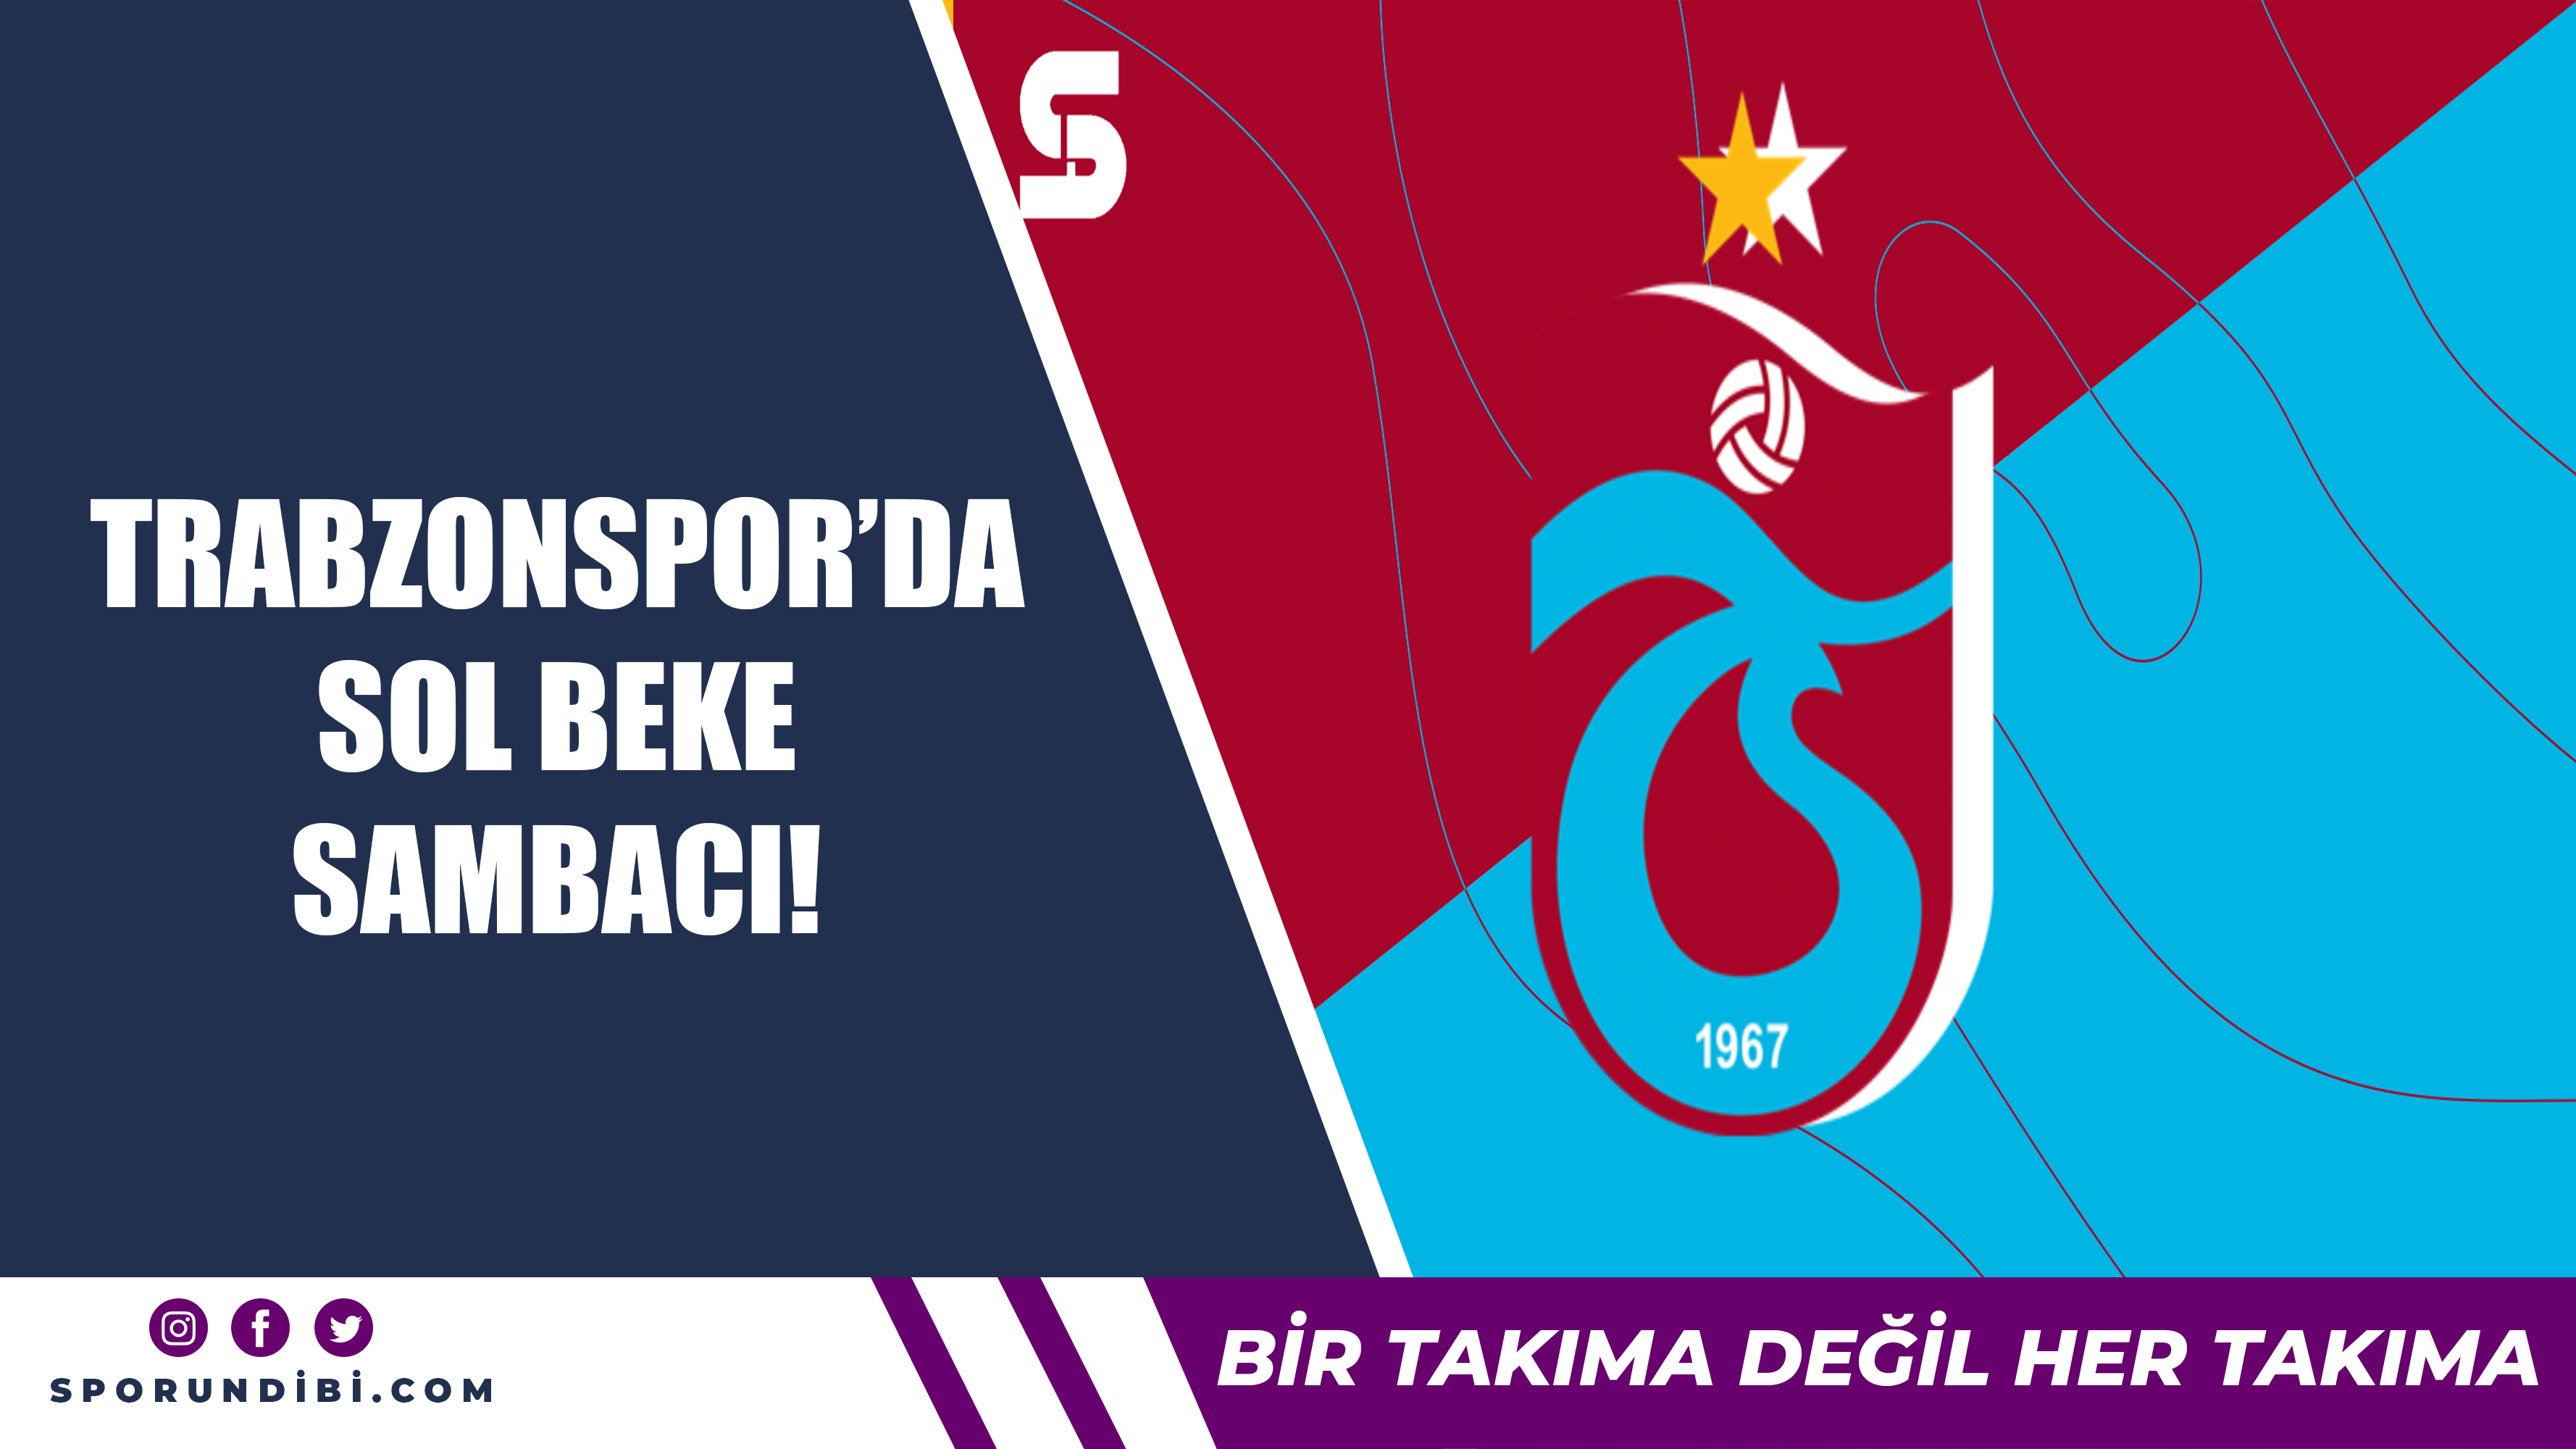 Trabzonspor'da sol beke sambacı!